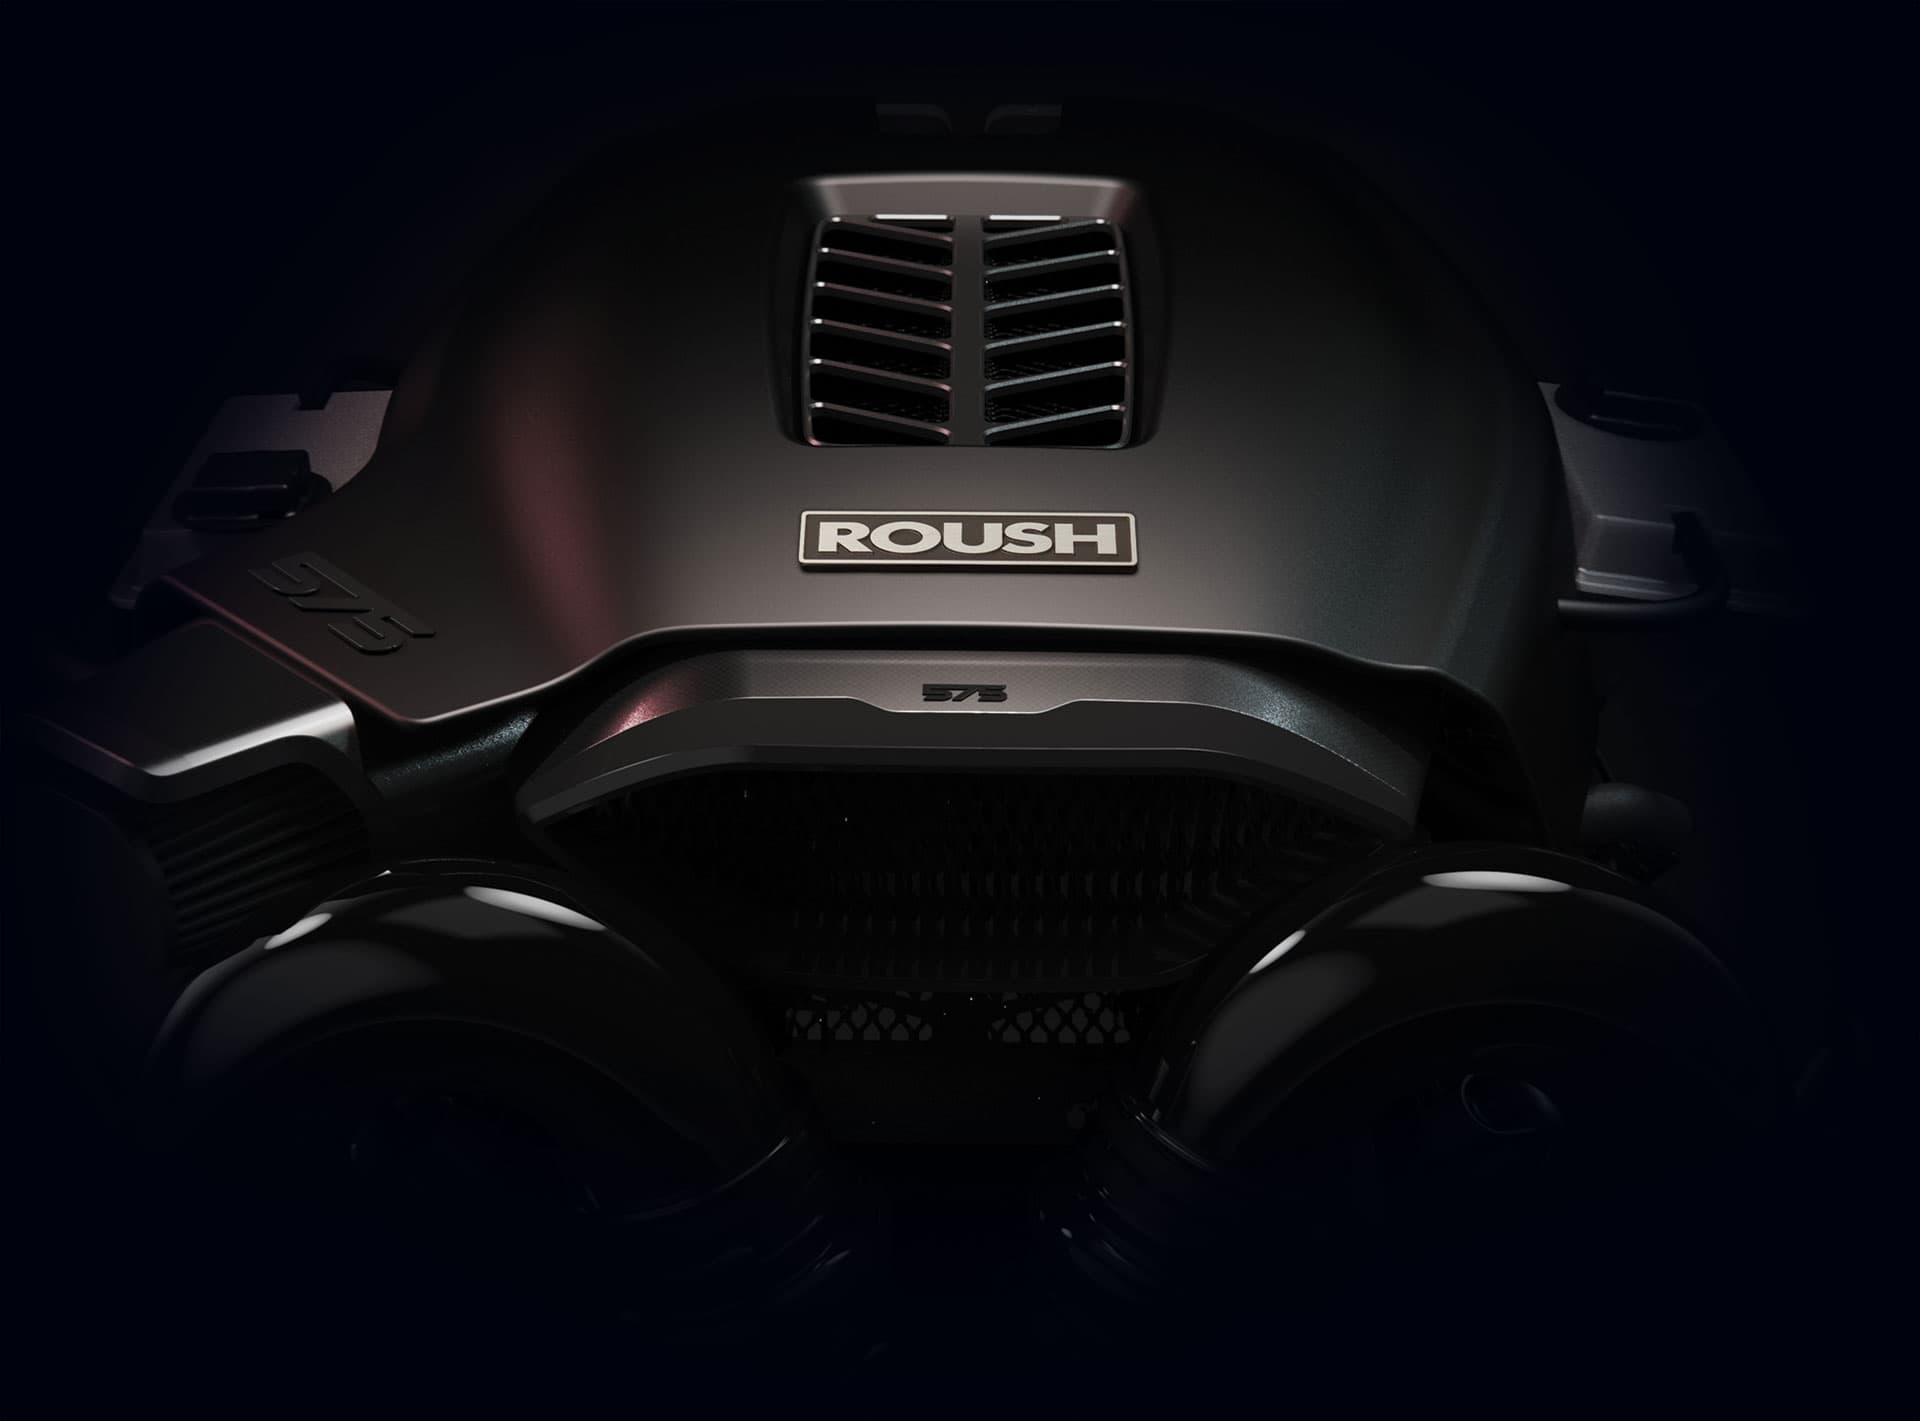 Roush 575 Concept Engine